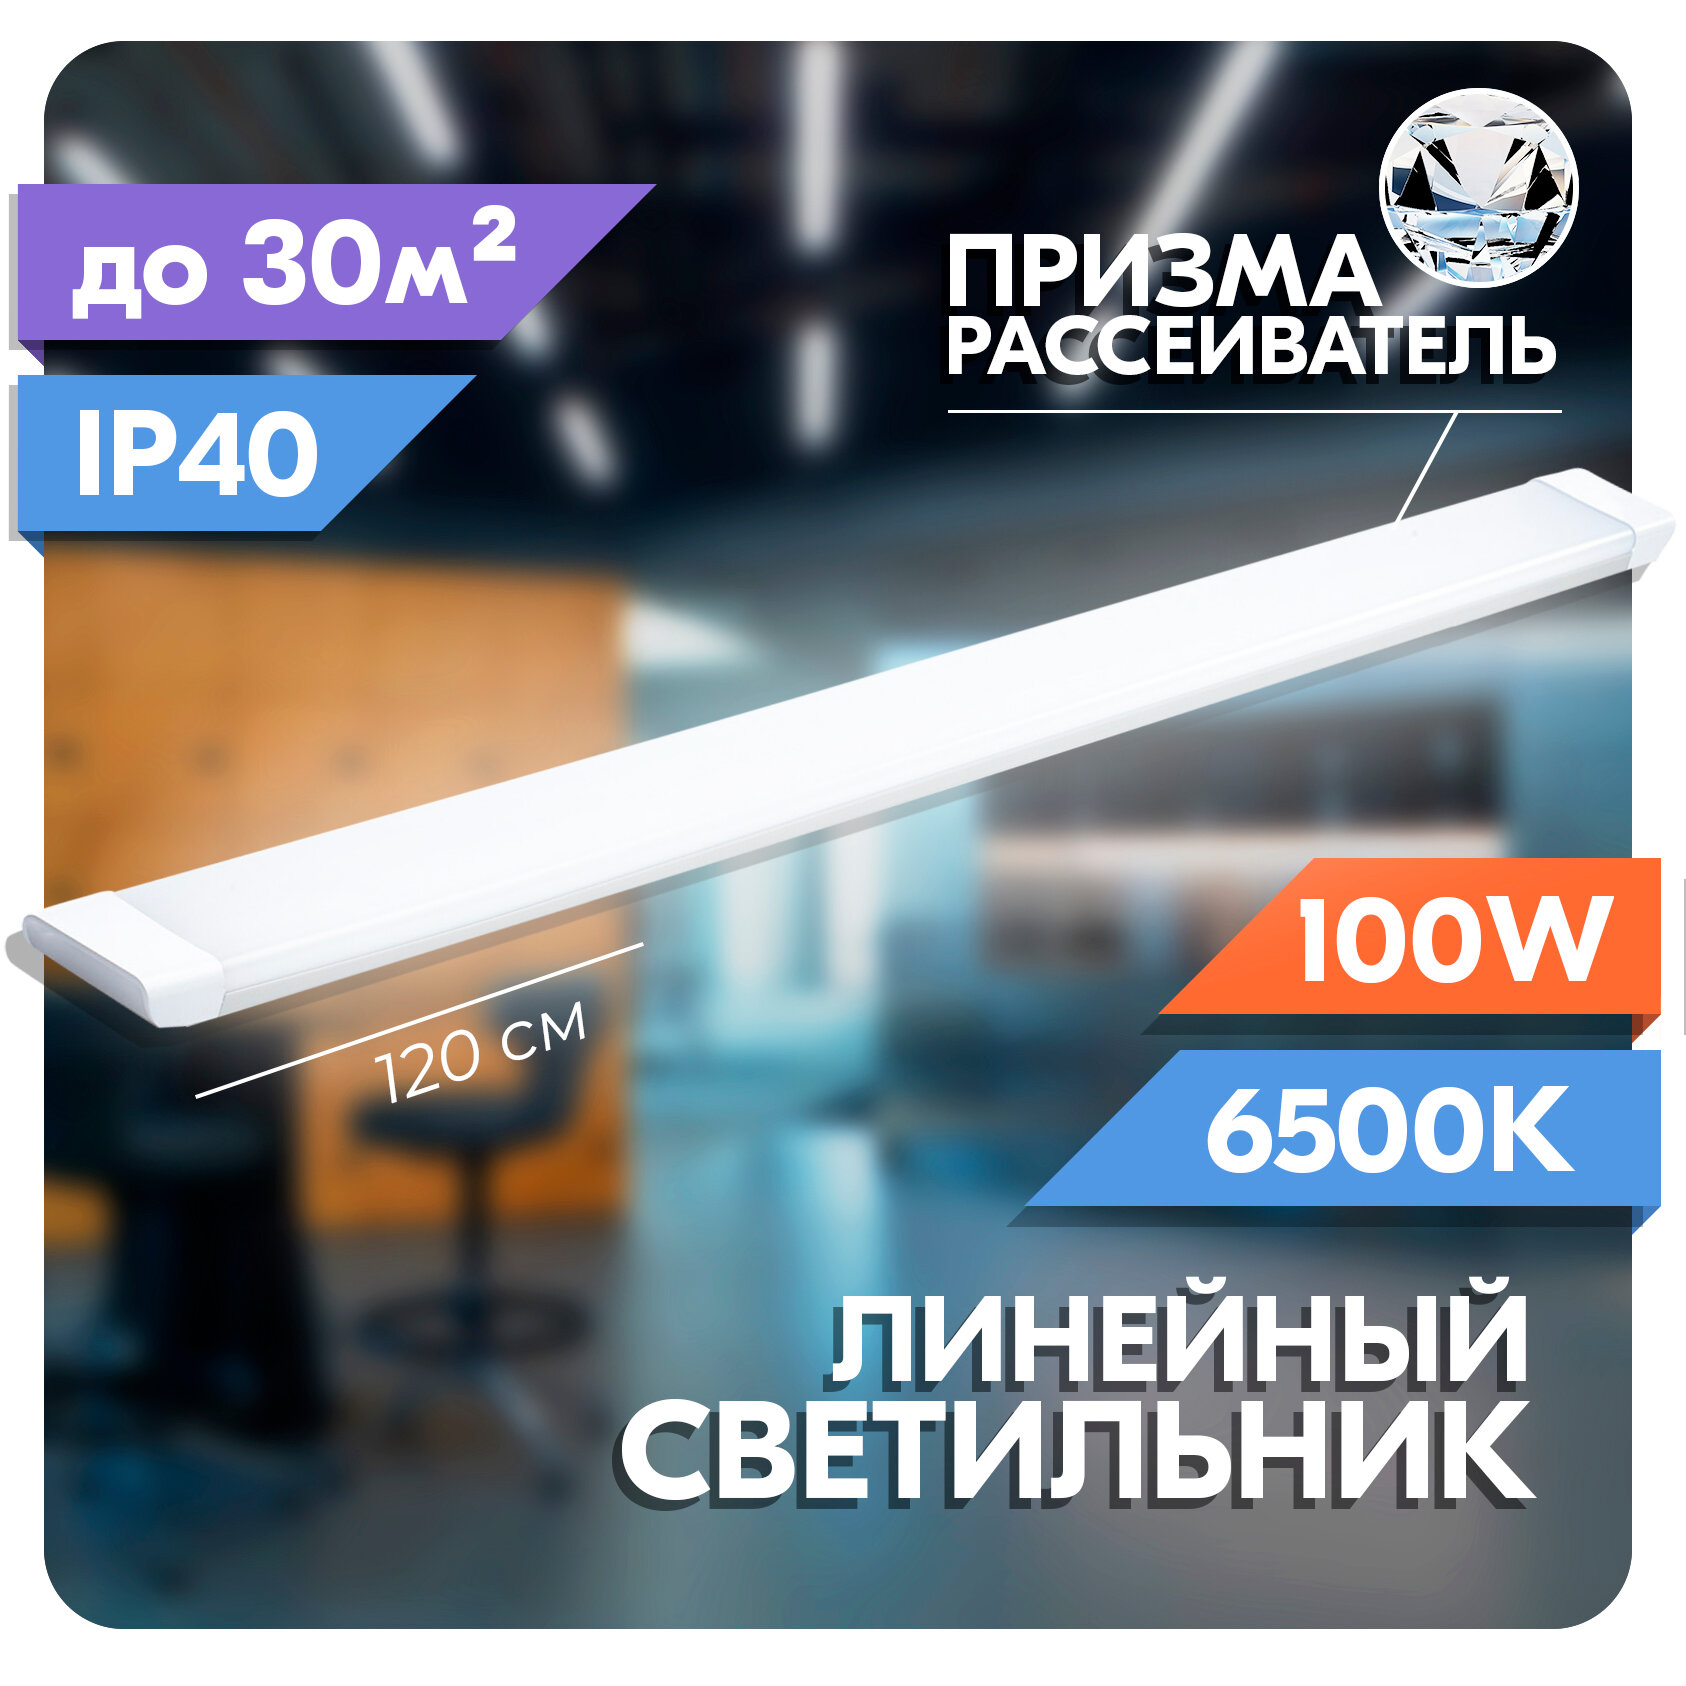 Светильник линейный светодиодный RSV 100 Вт, рассеиватель призма, 6500K холодный свет, 120х75х25 мм